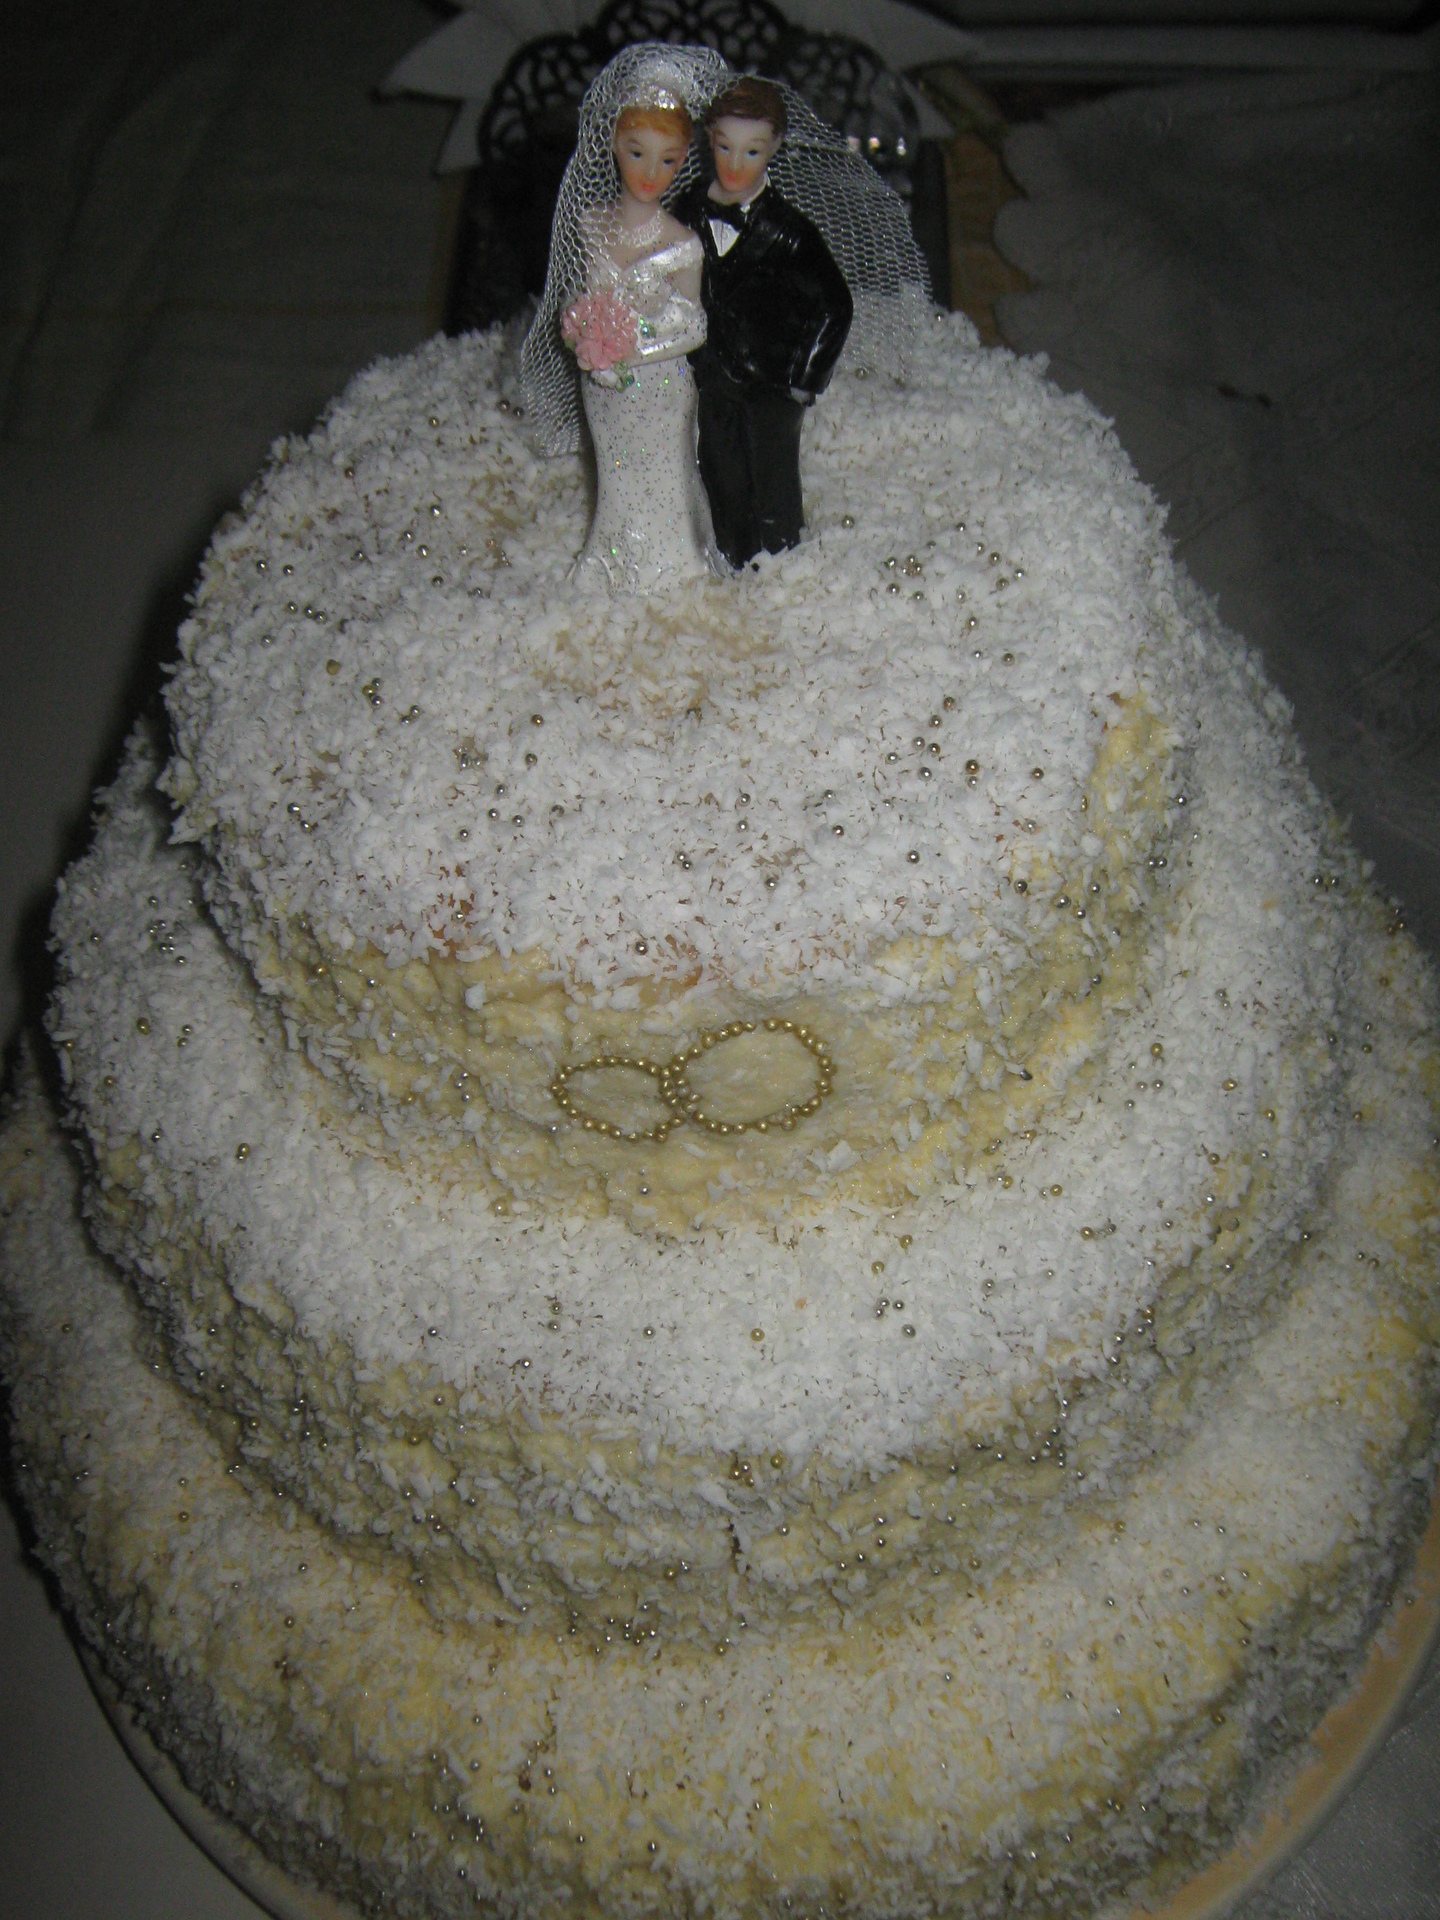 Свадебный торт Наполеон